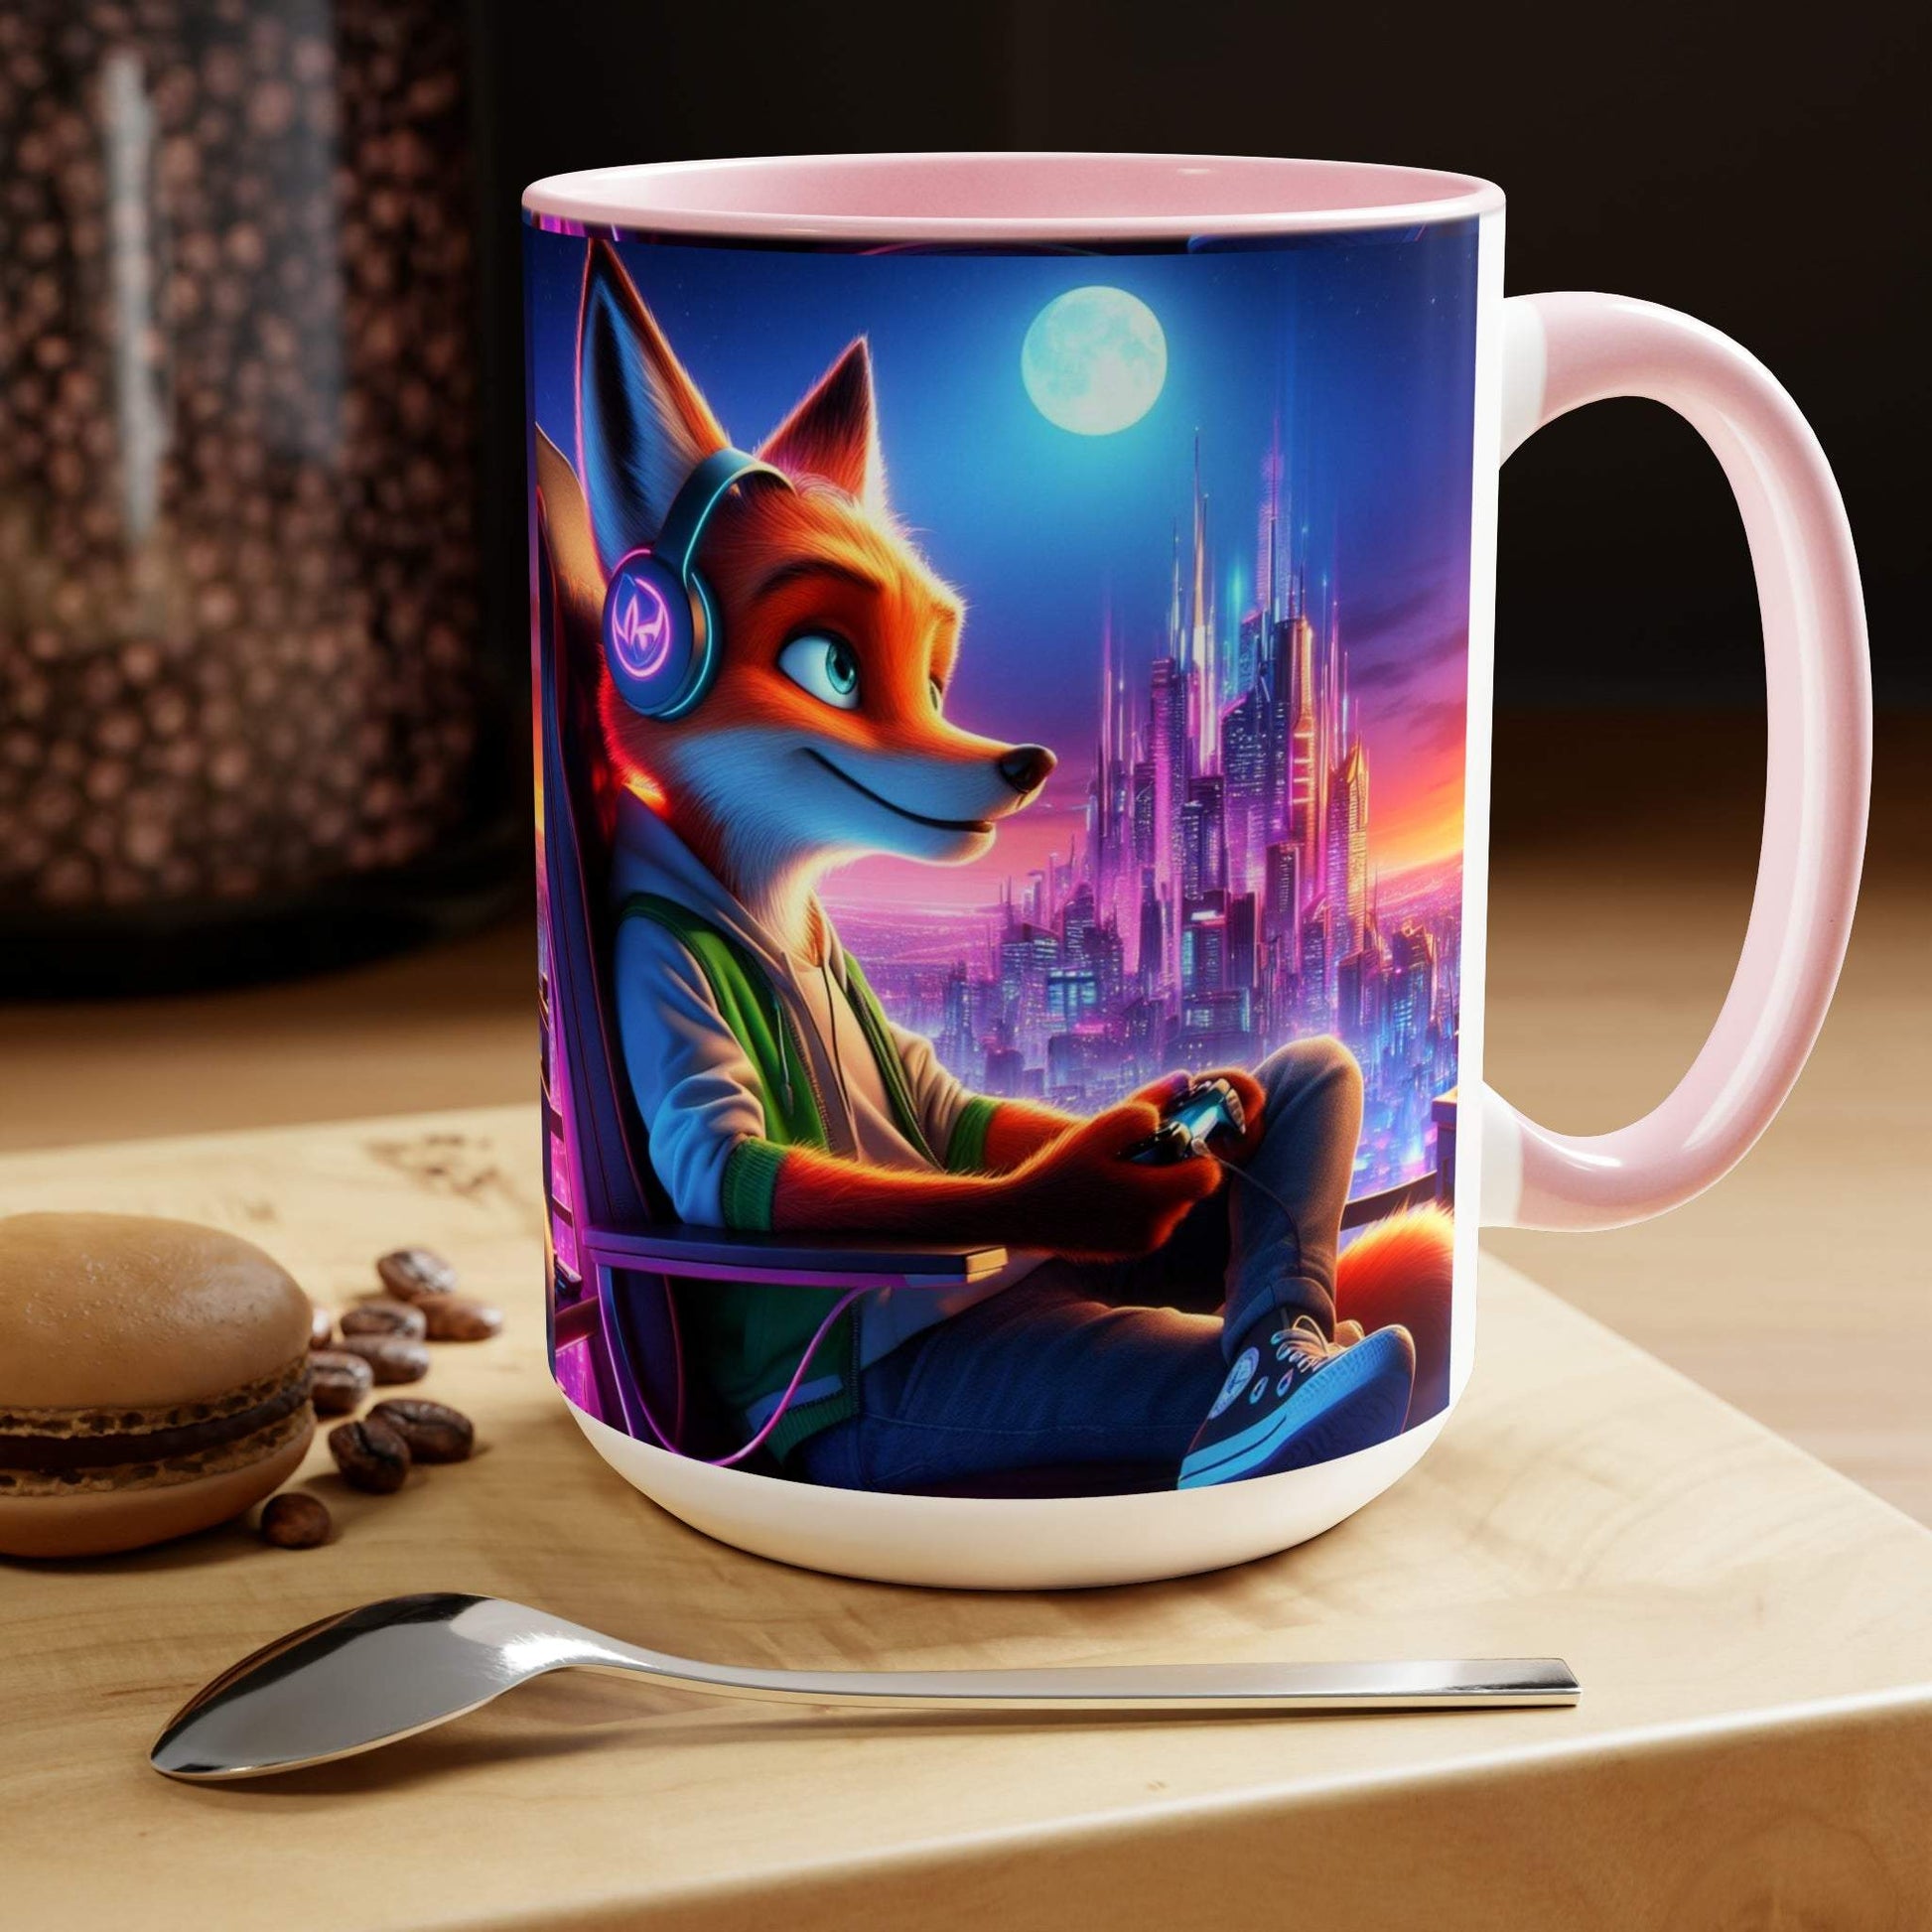 fox mug, gaming mug